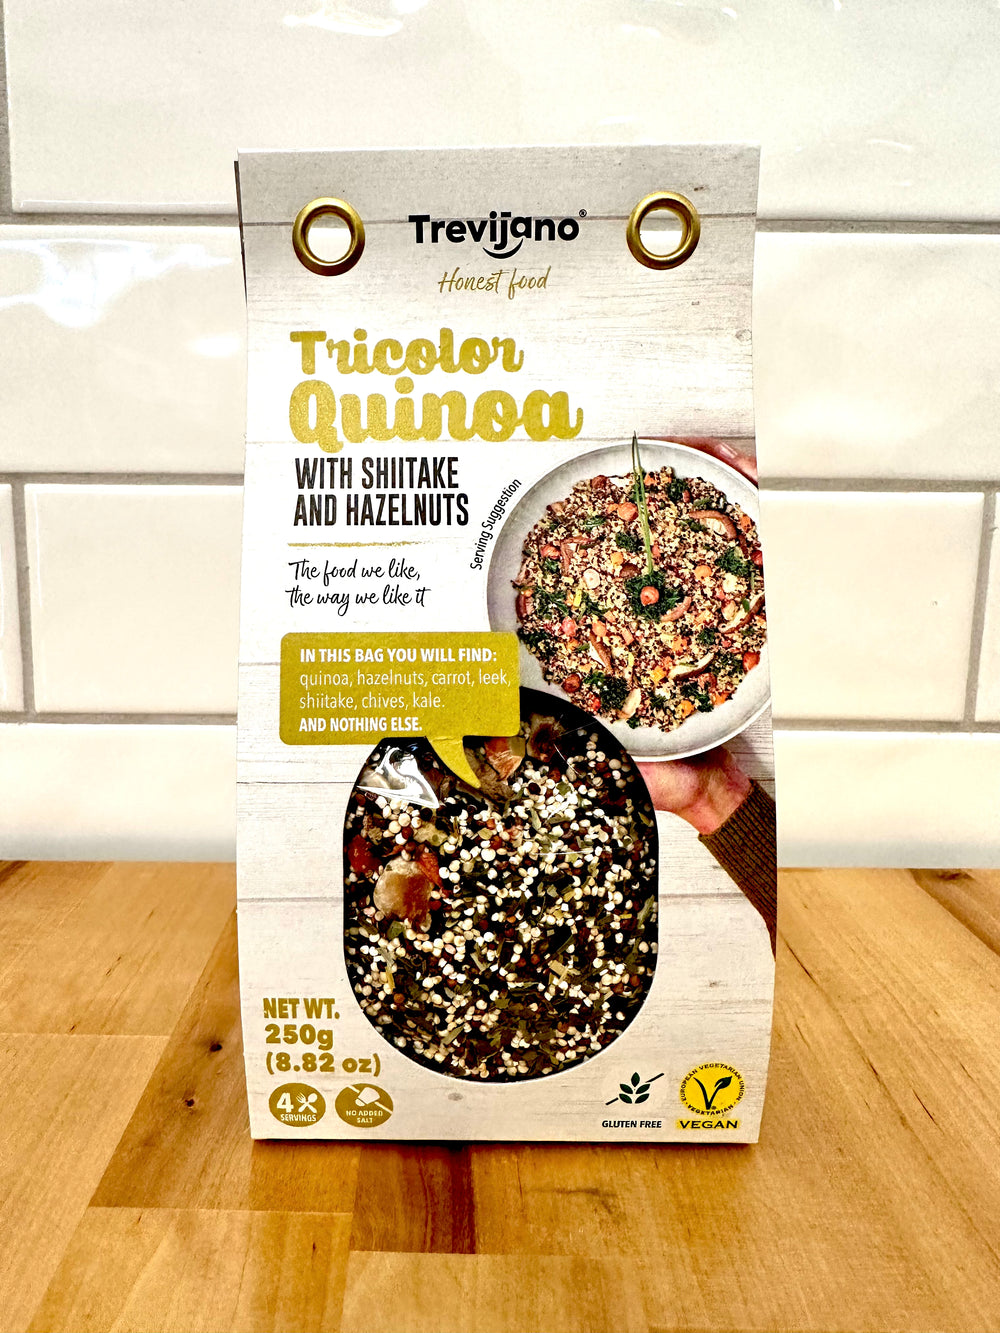 TREVIJANO Tricolor Quinoa With Shitake And Hazelnuts